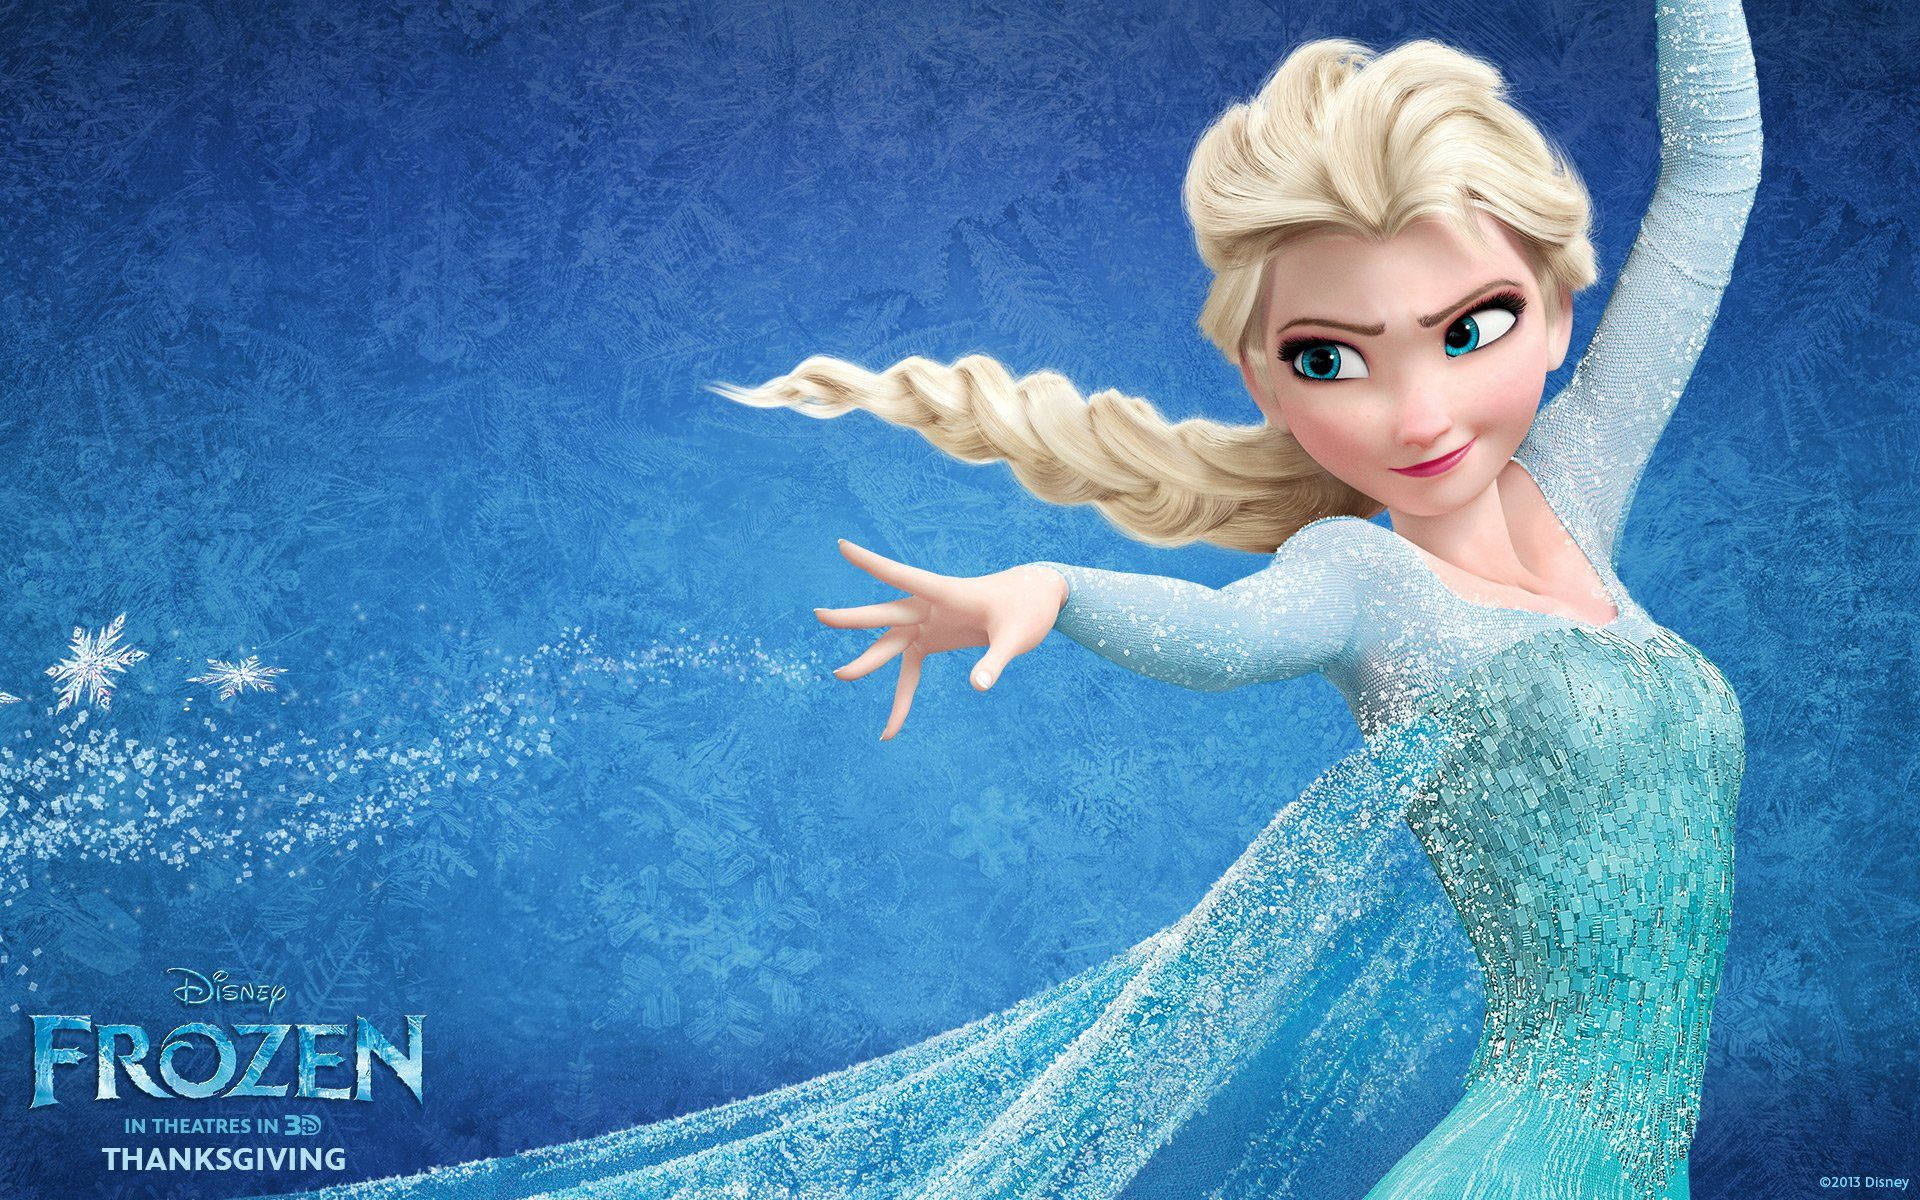 Princess Elsa in her magical blue dress from Frozen Wallpaper